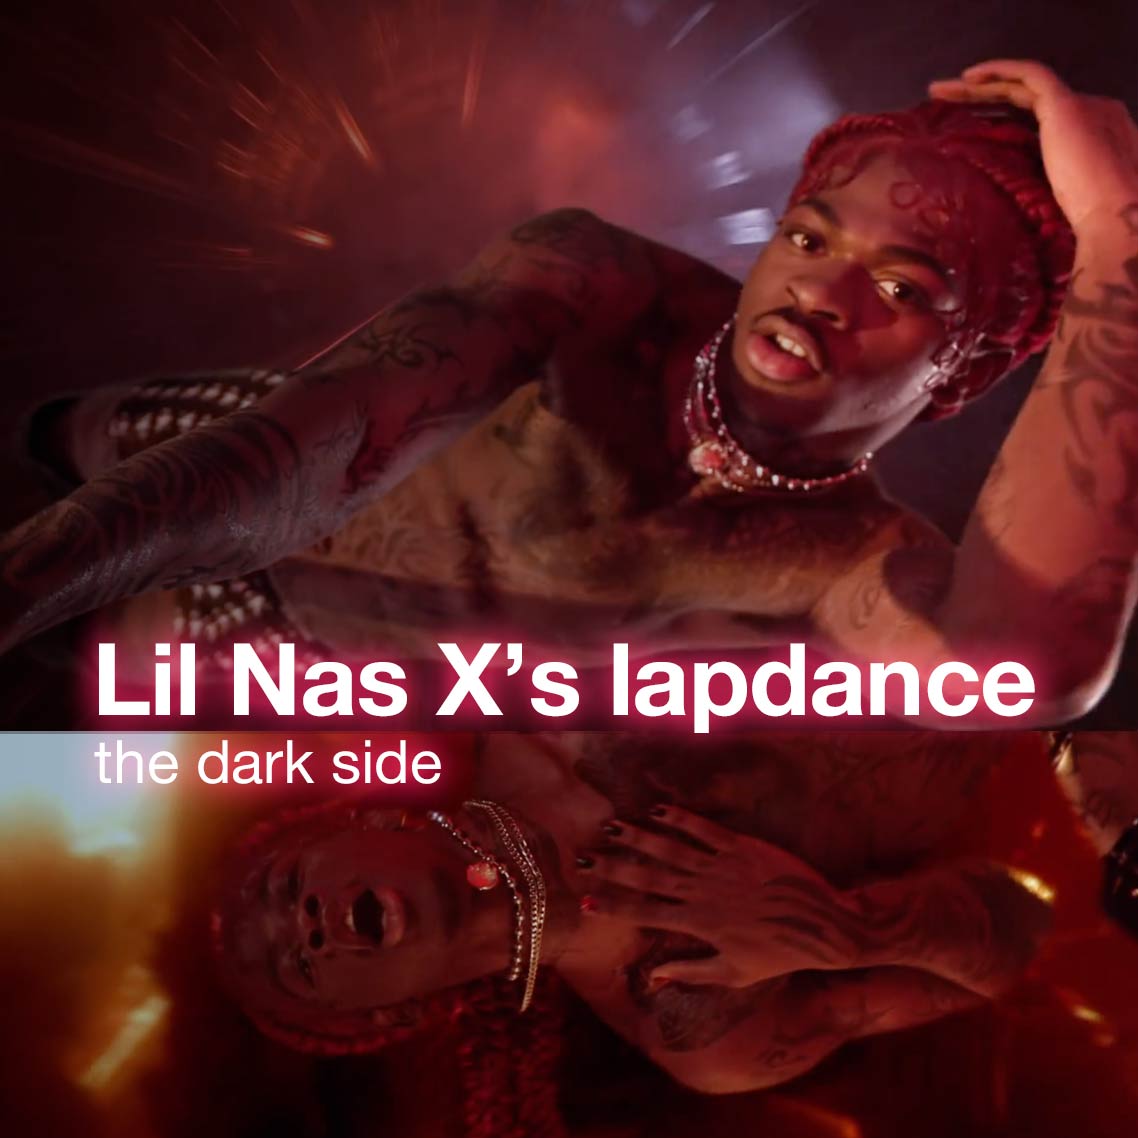 Lil Nas X's lapdance